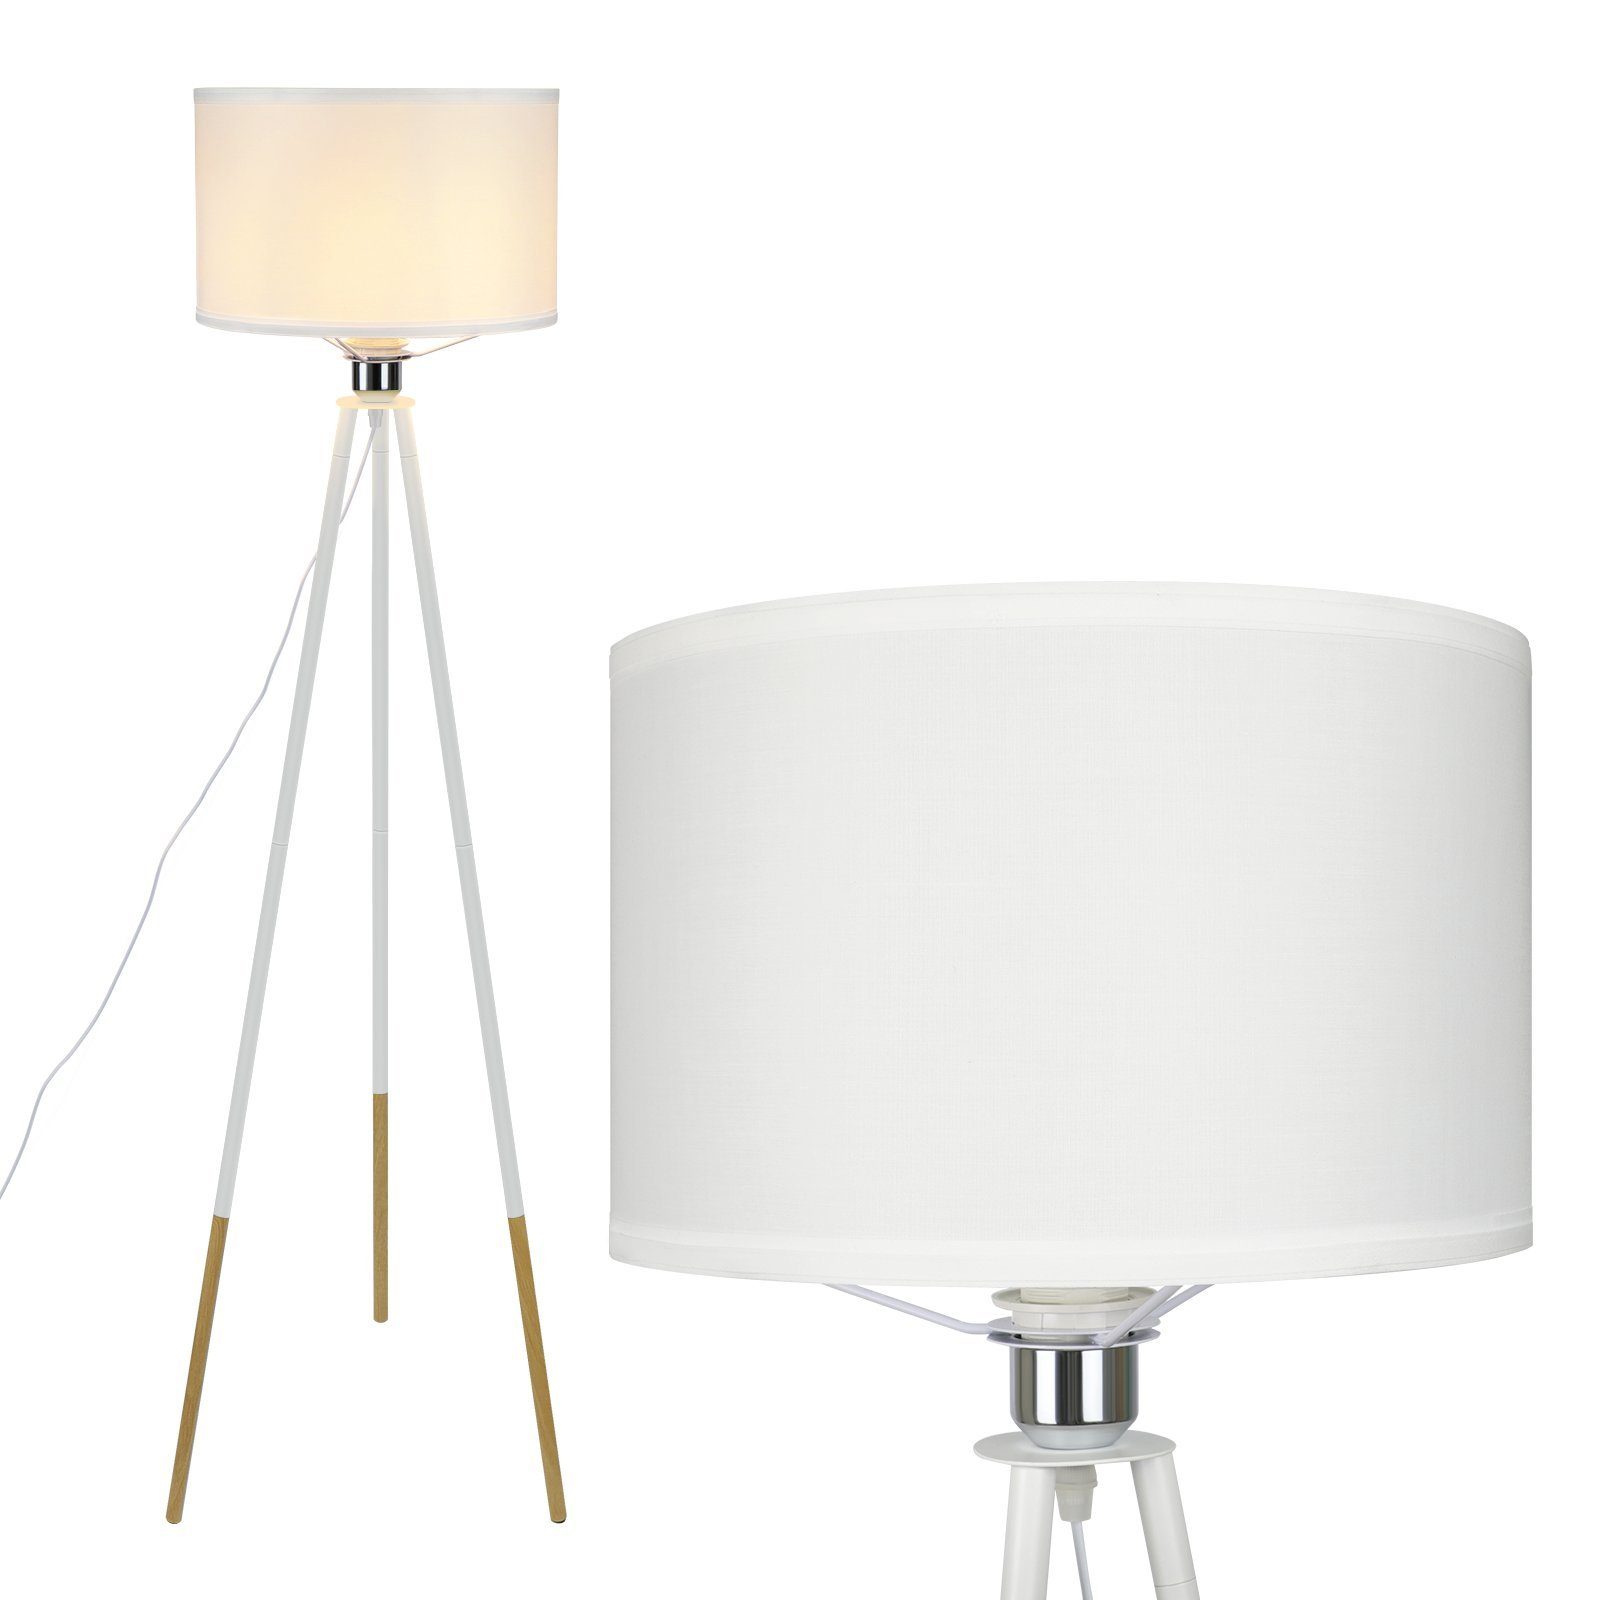 ZMH LED Stehlampe Wohnzimmer Modern Mit Holz - E27 Standleuchte Landhausstil Weiß, Einfache Montage, ohne Leuchtmittel, Dreibein, 130.5cm